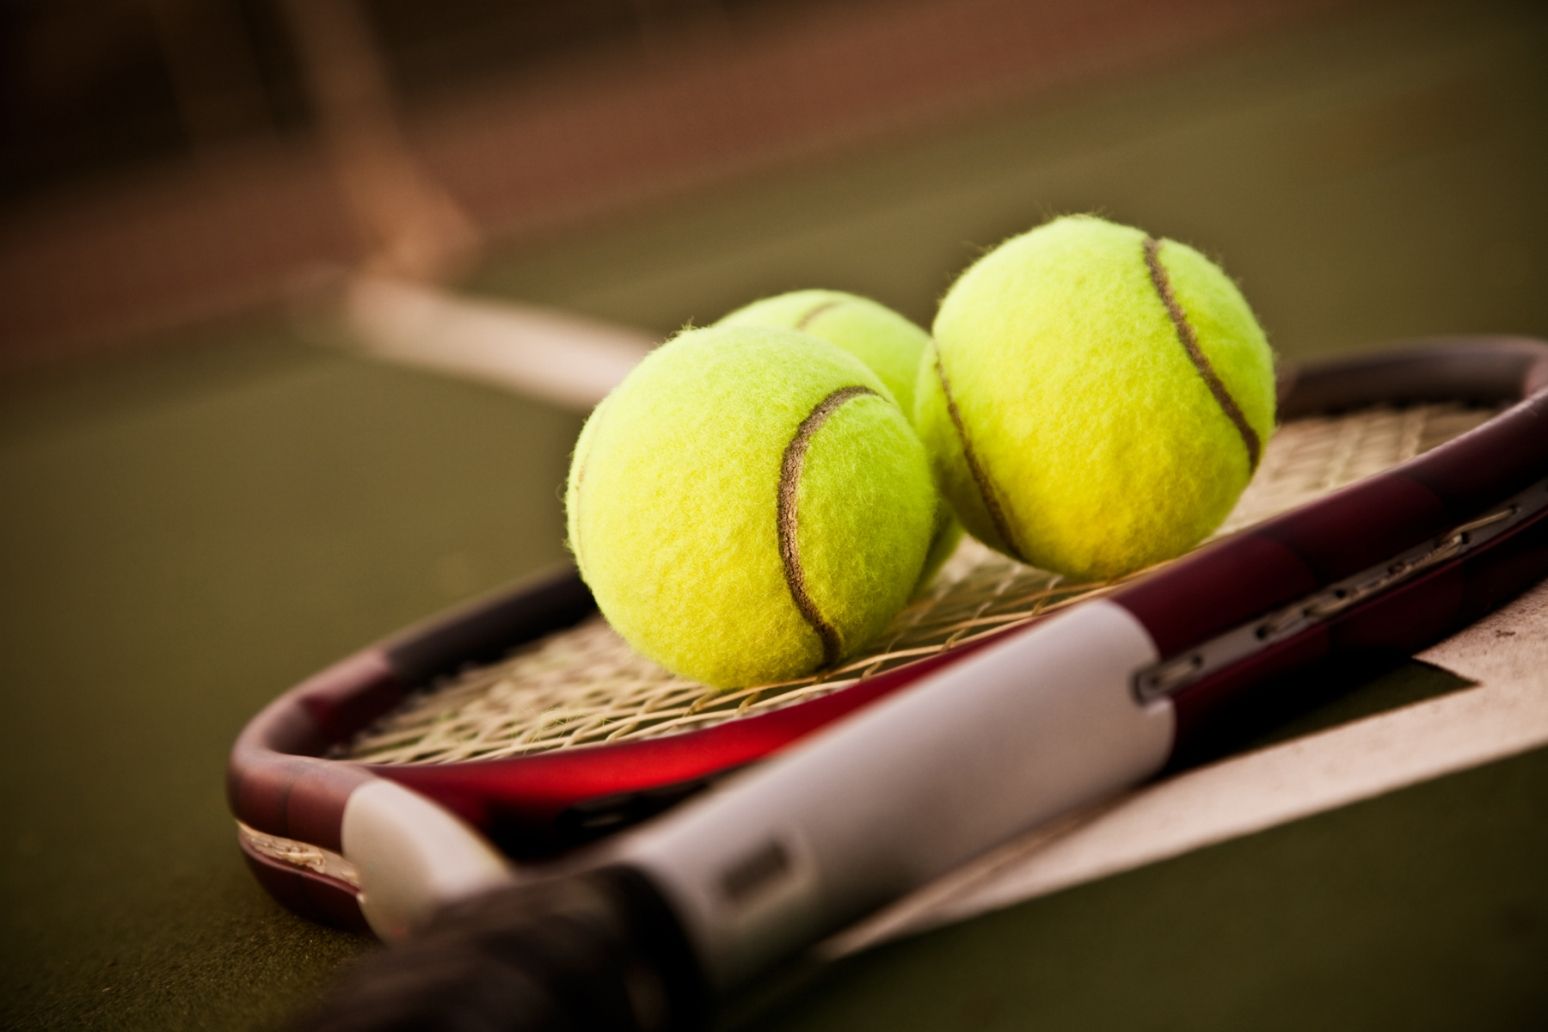 Tennis Sport Wallpaper. Tennis racquet, Tennis balls, Tennis rules